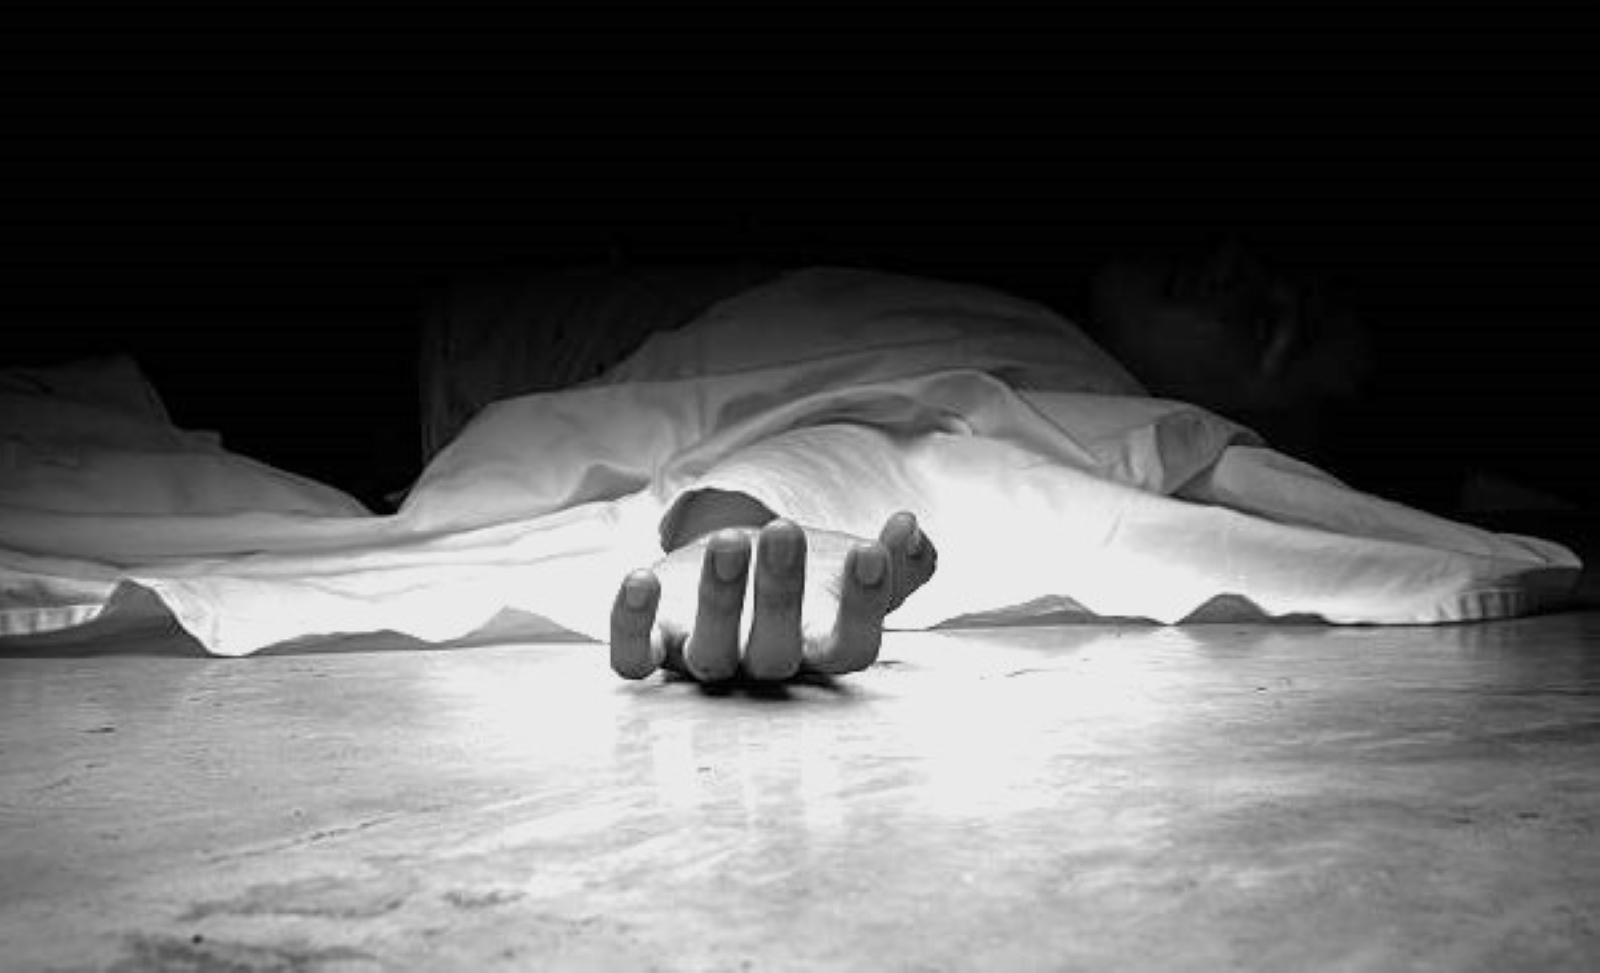 105 फीट गहरे बोरवेल में गिरी ढाई साल की बच्ची की मौत, परिजनों में हाहाकार